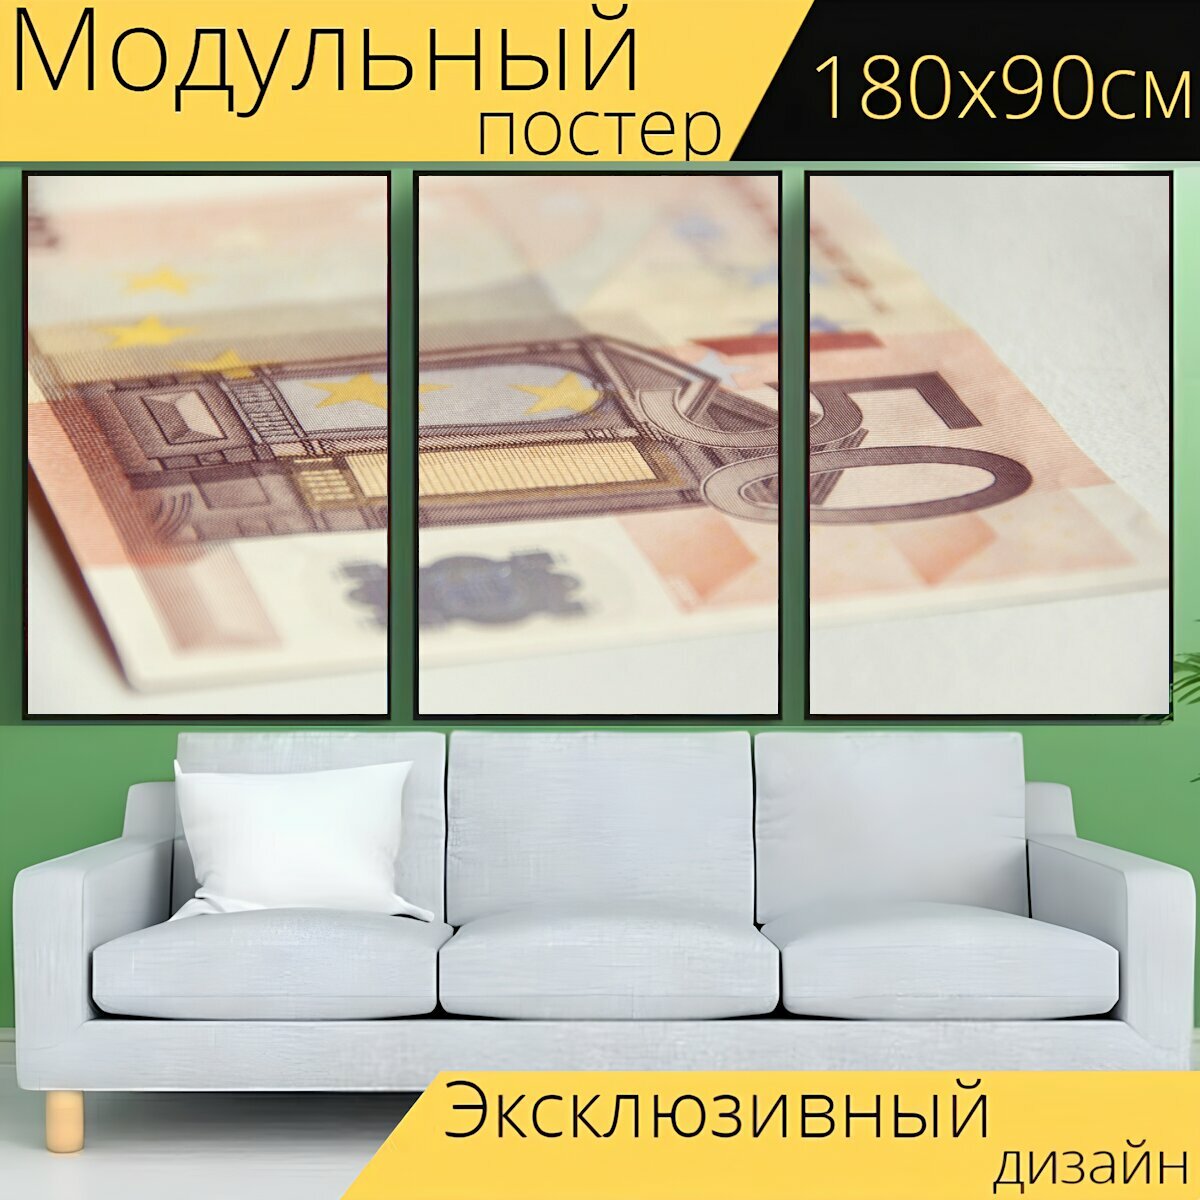 Модульный постер "Деньги, евро, денежная купюра" 180 x 90 см. для интерьера